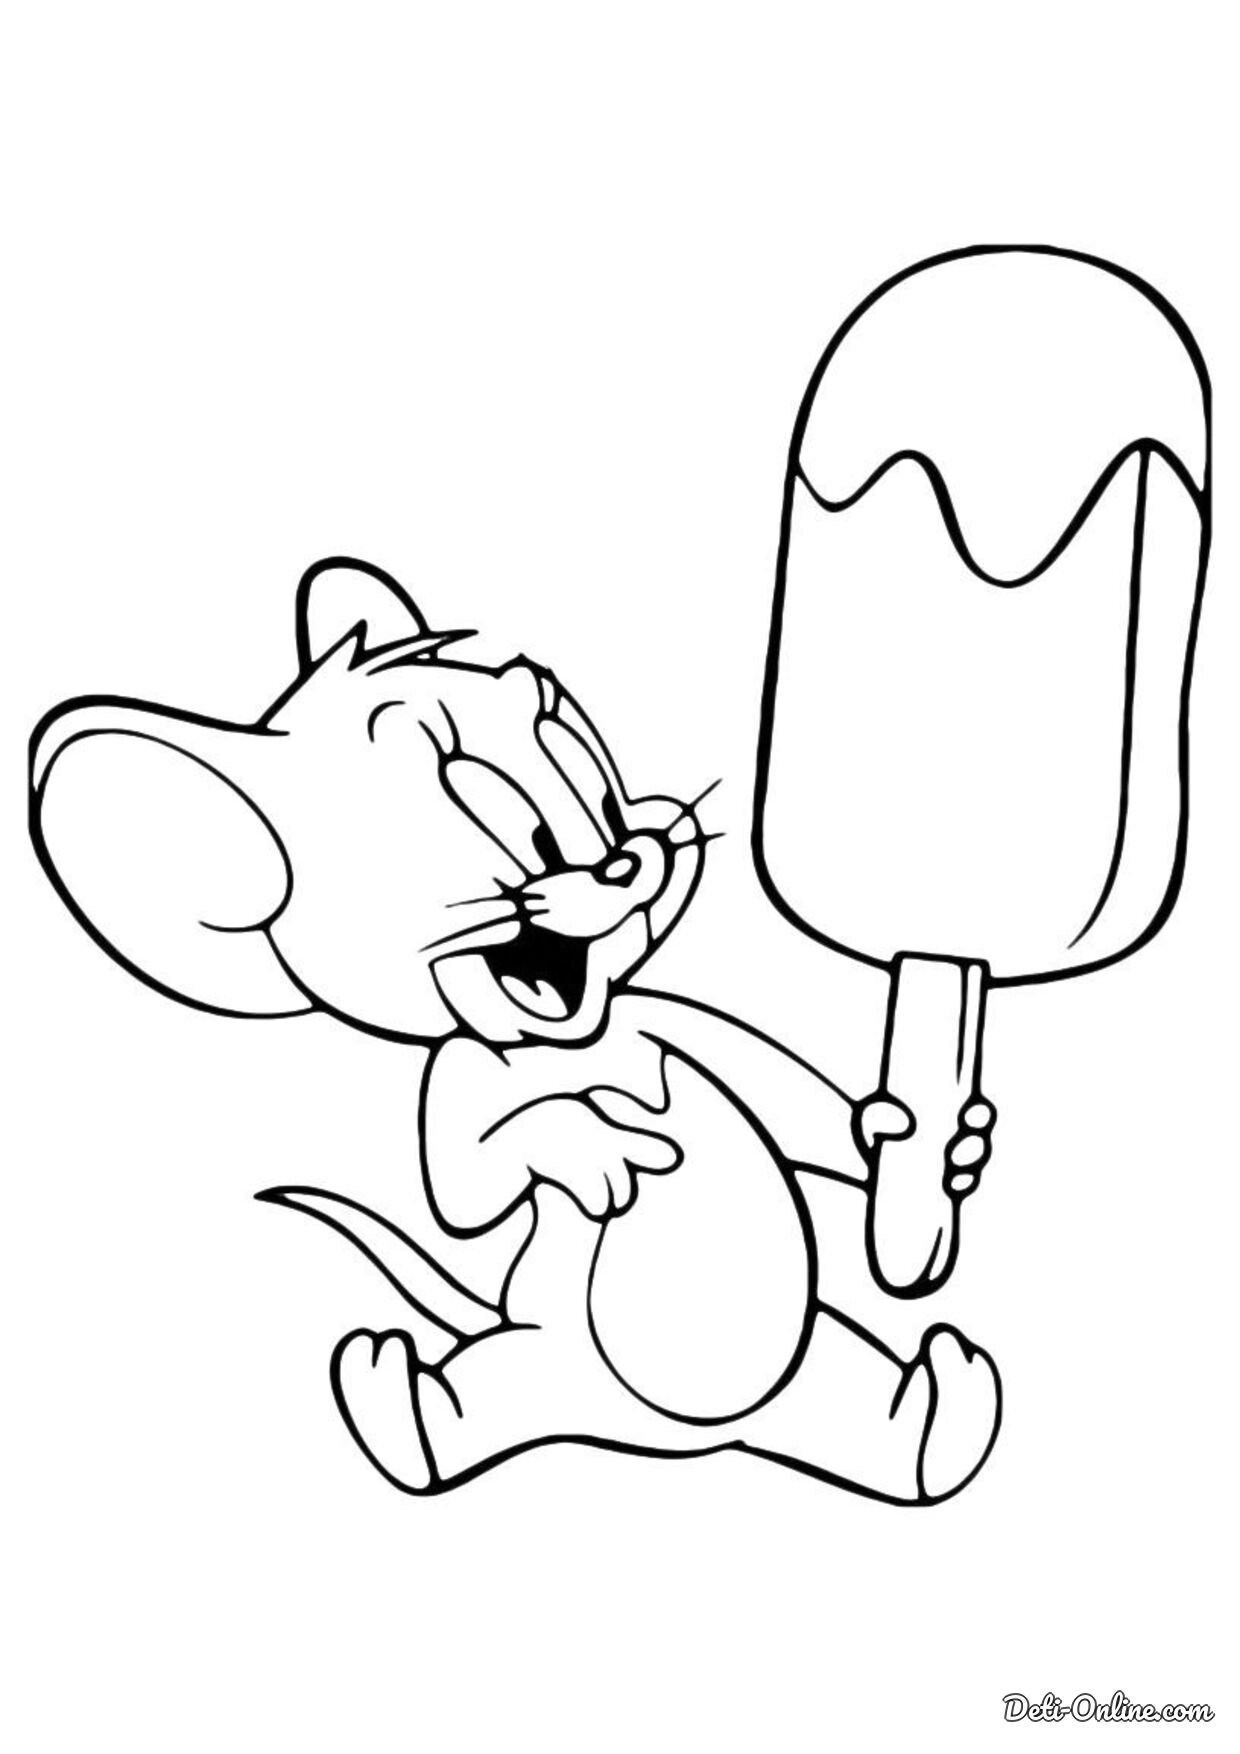 Мышонок Джерри раскраска для детей